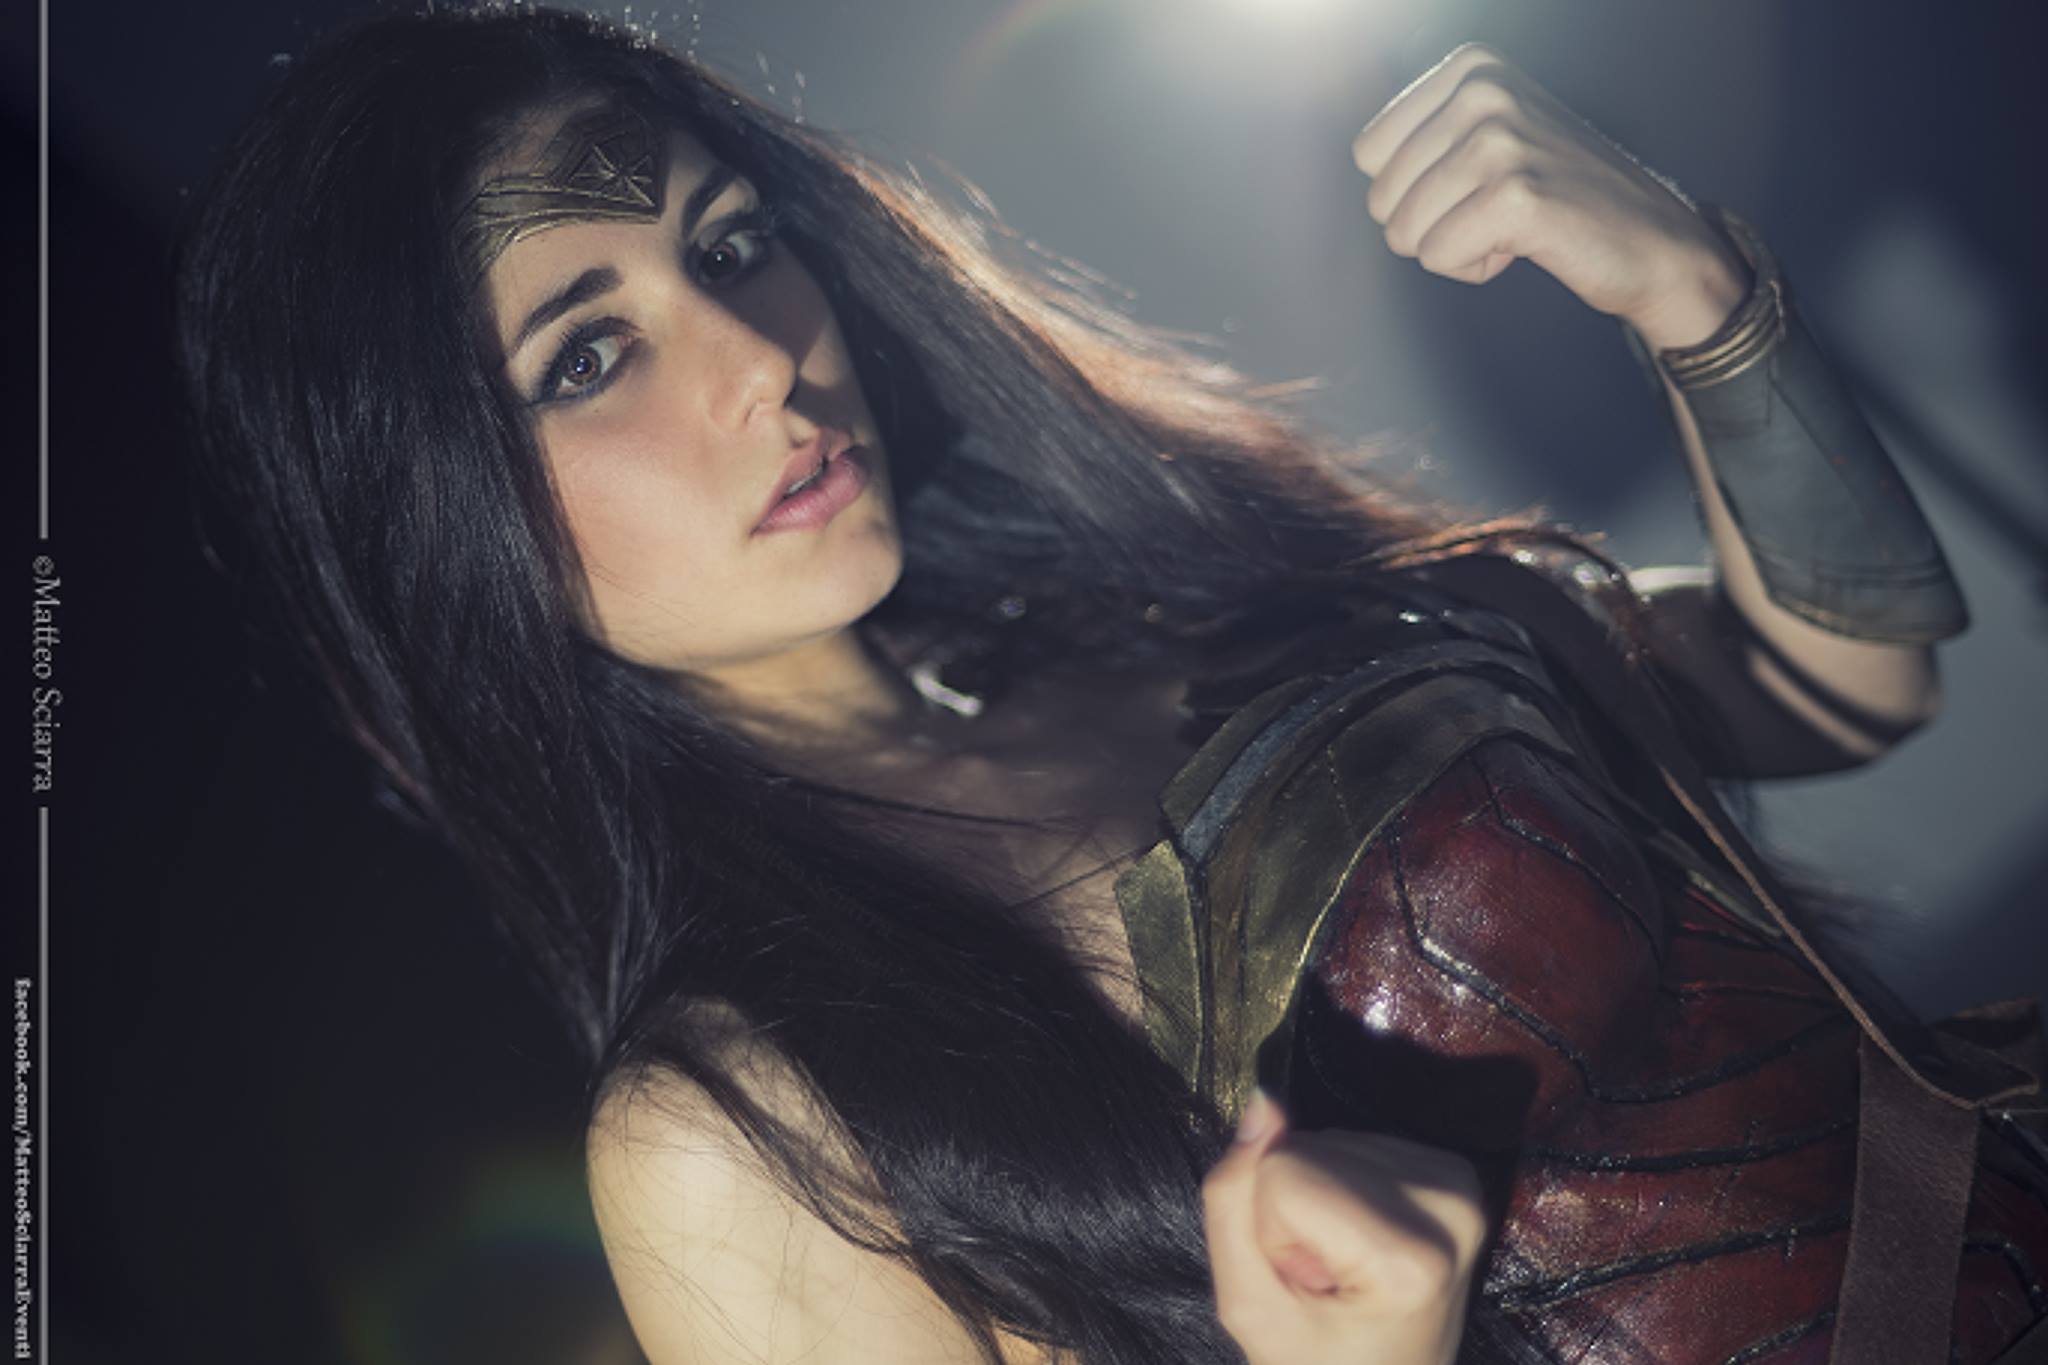 Wonder Woman Cosplay by Ambra Pazzani